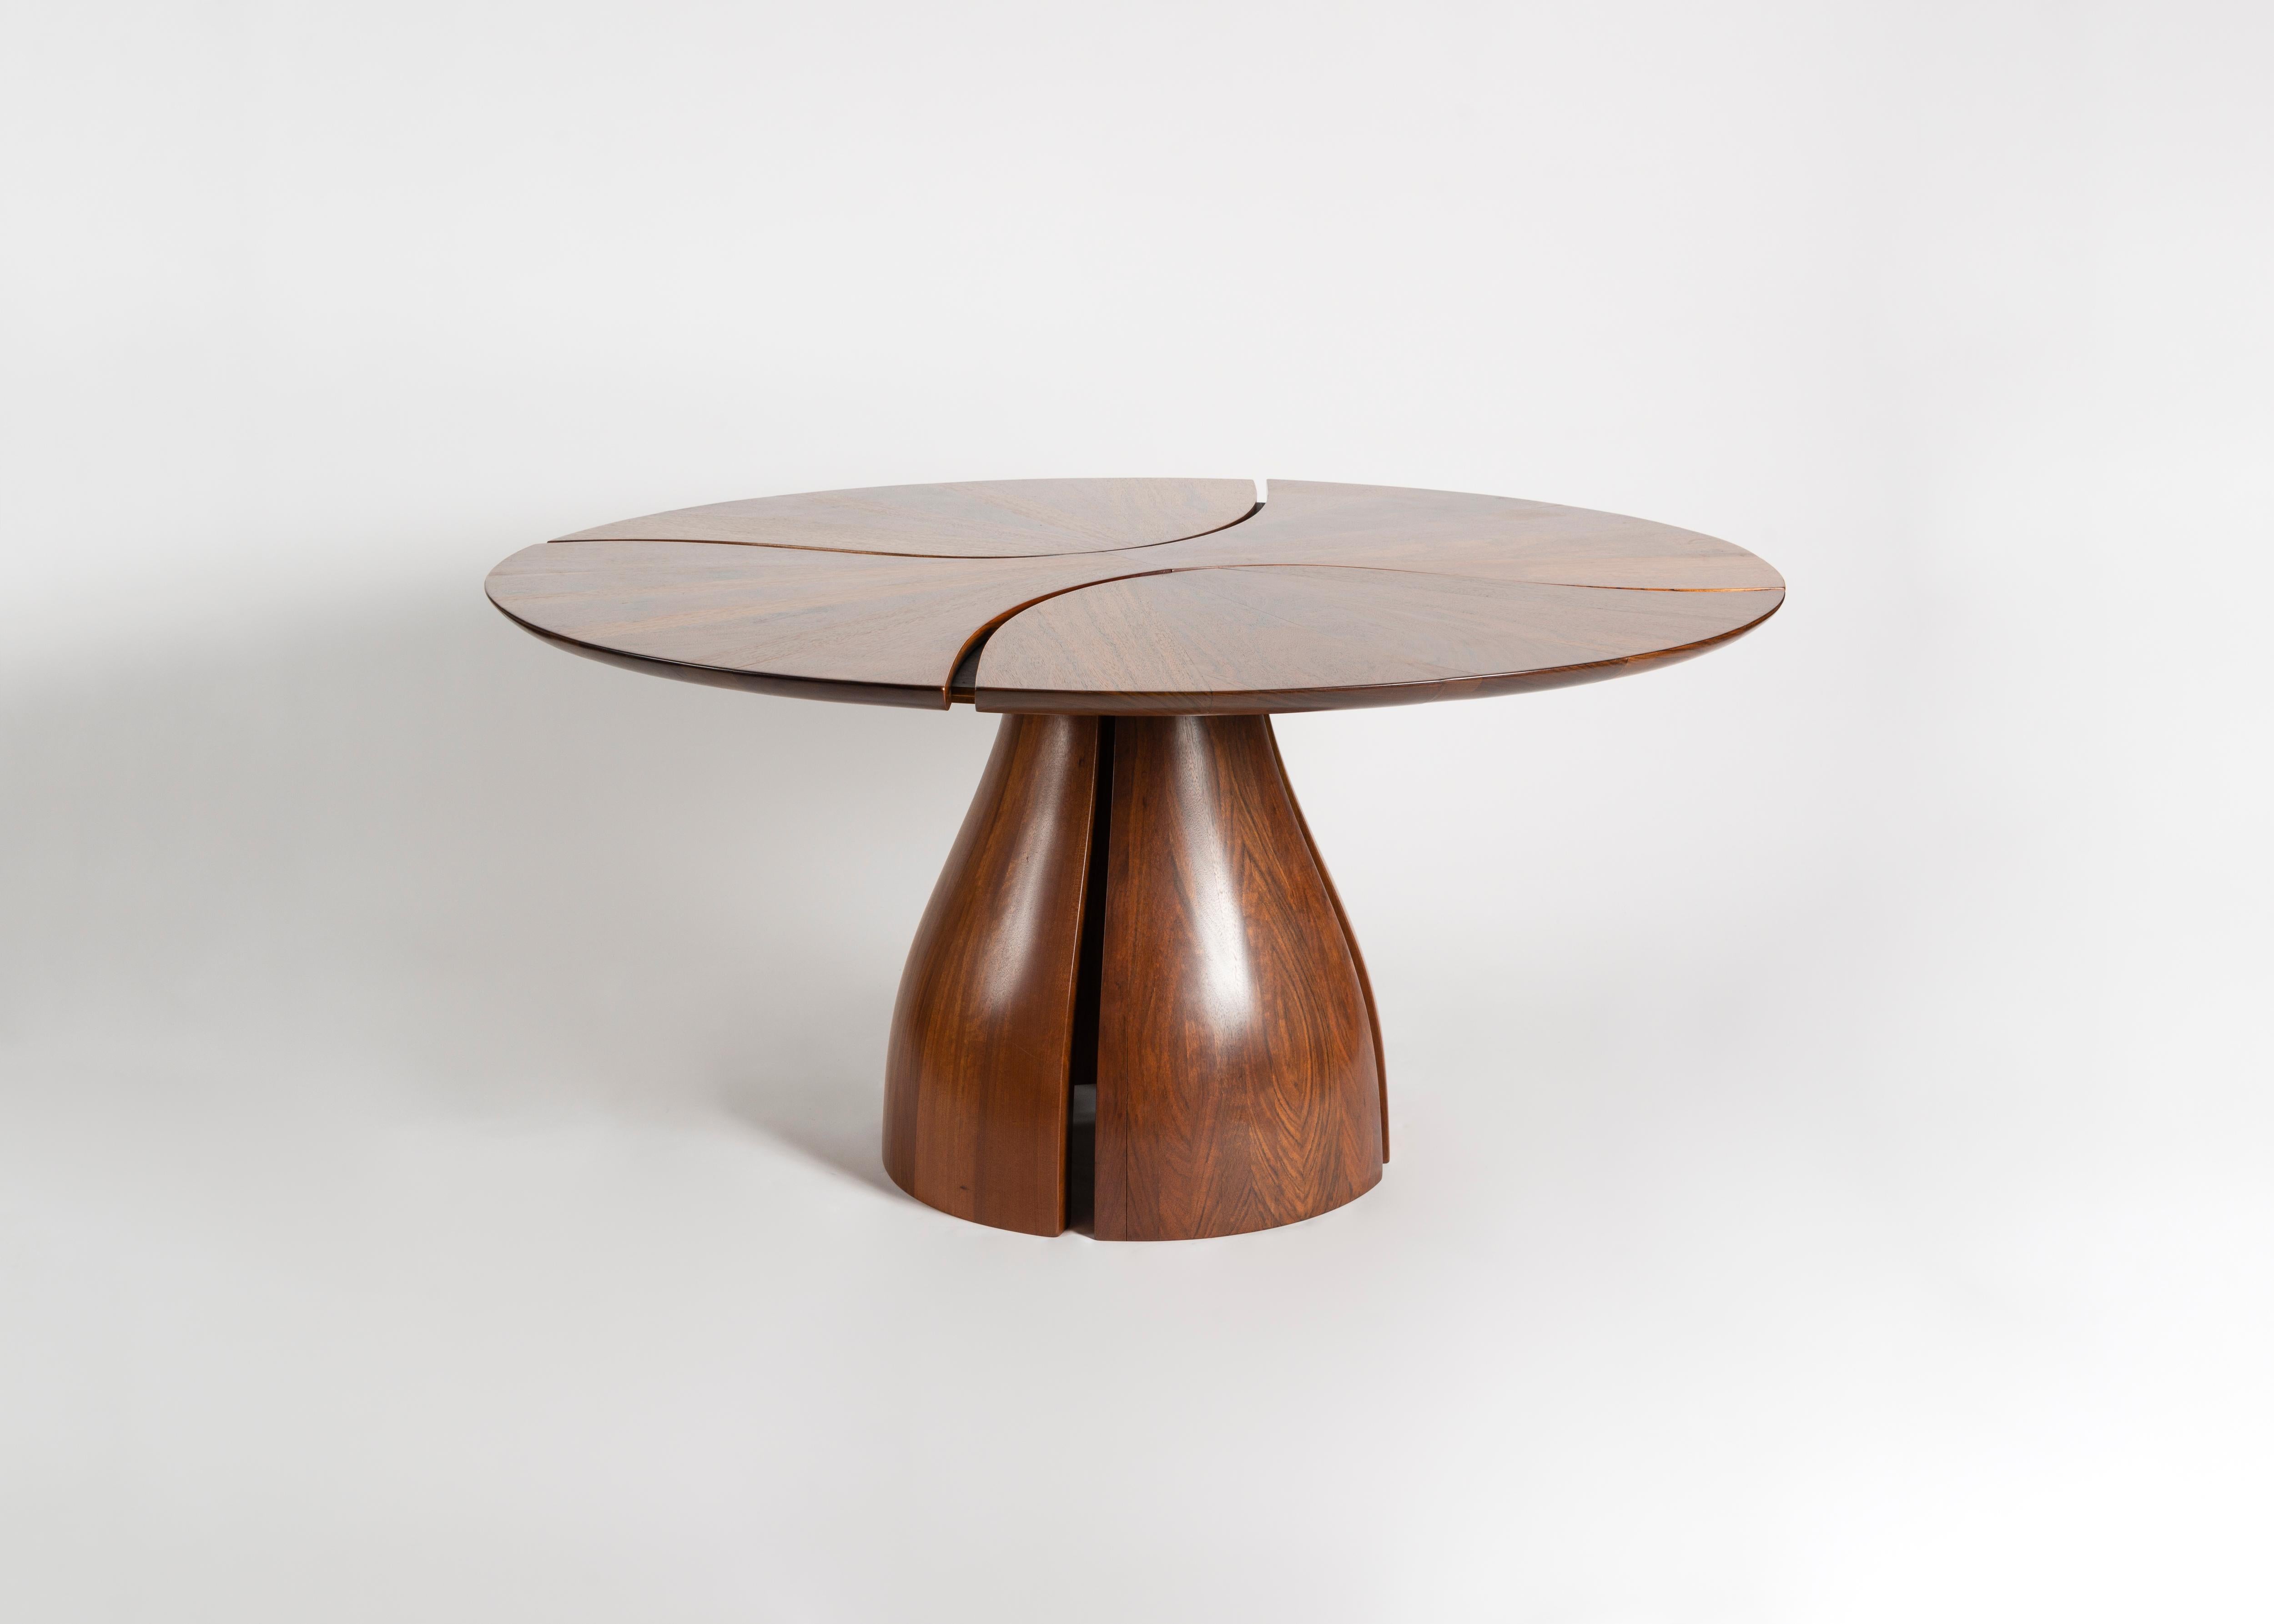 Dieser skulpturale Tisch besteht aus mehreren Mosambikholzstücken, die nahtlos in die Form einer Lilie eingepasst sind. Wie ein Großteil der Arbeiten von Michael Coffey stellt das Werk einen Kontrast zwischen der fließenden Qualität der Formen des